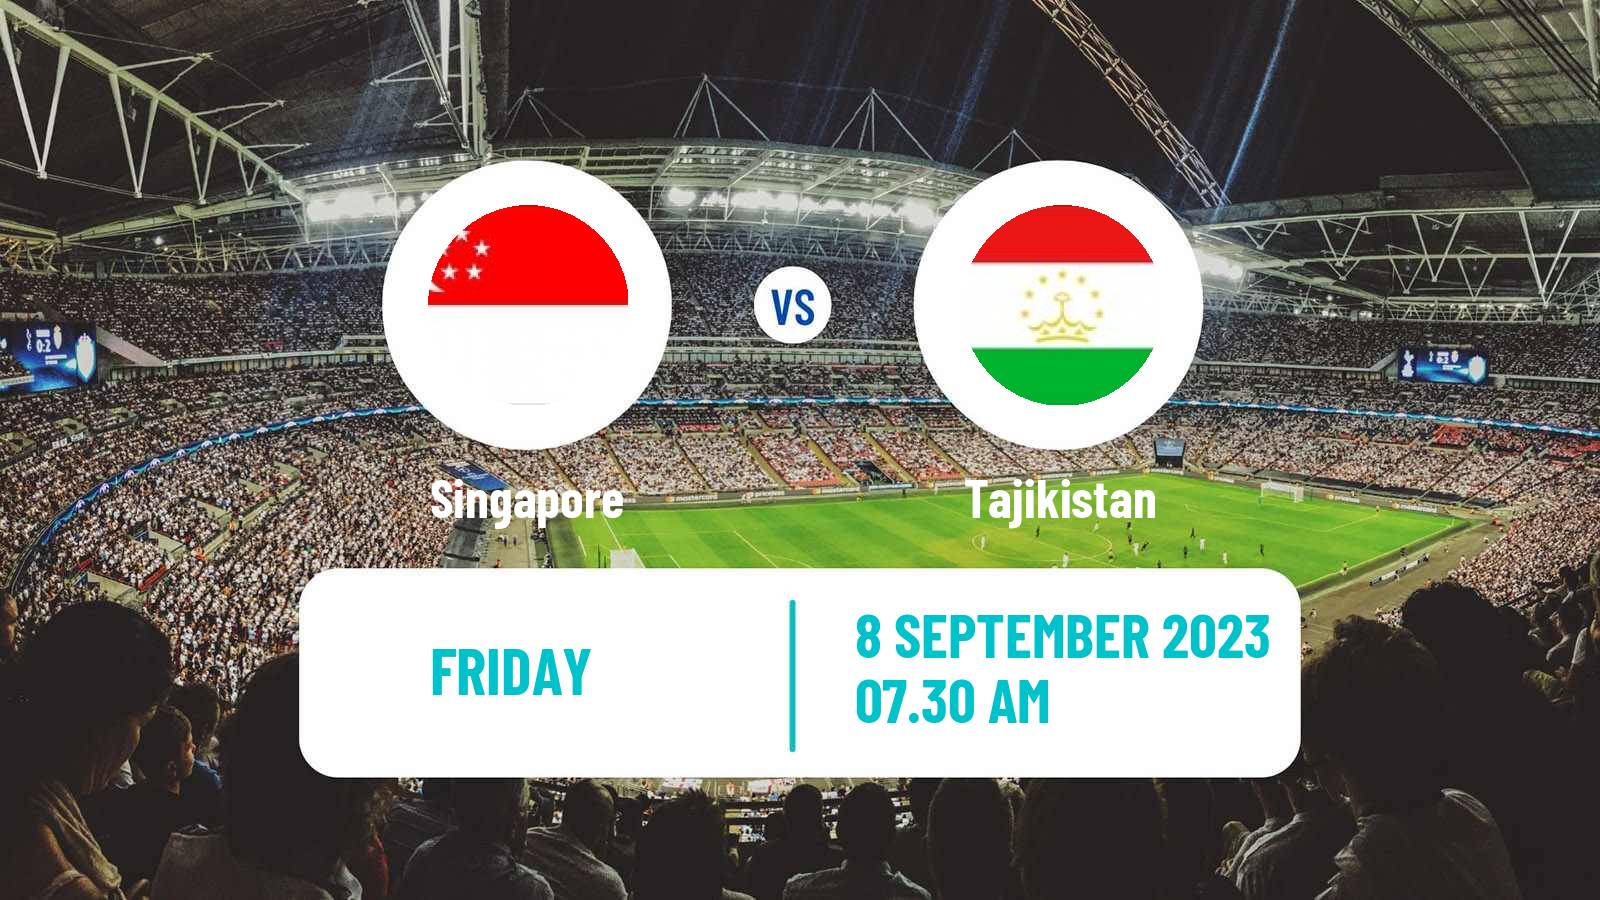 Soccer Friendly Singapore - Tajikistan